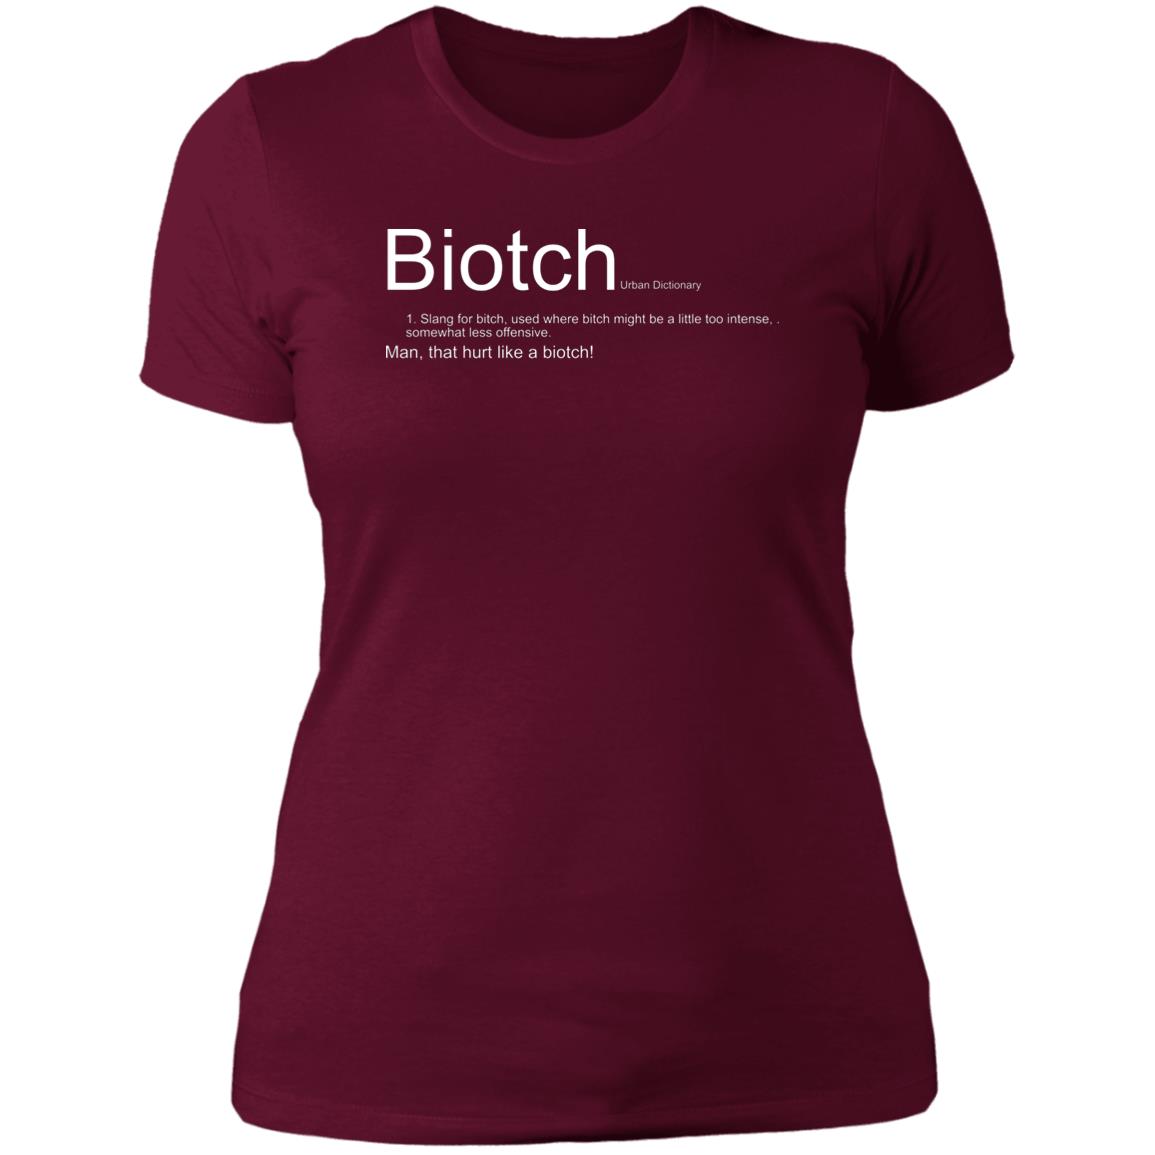 Biotch- women's